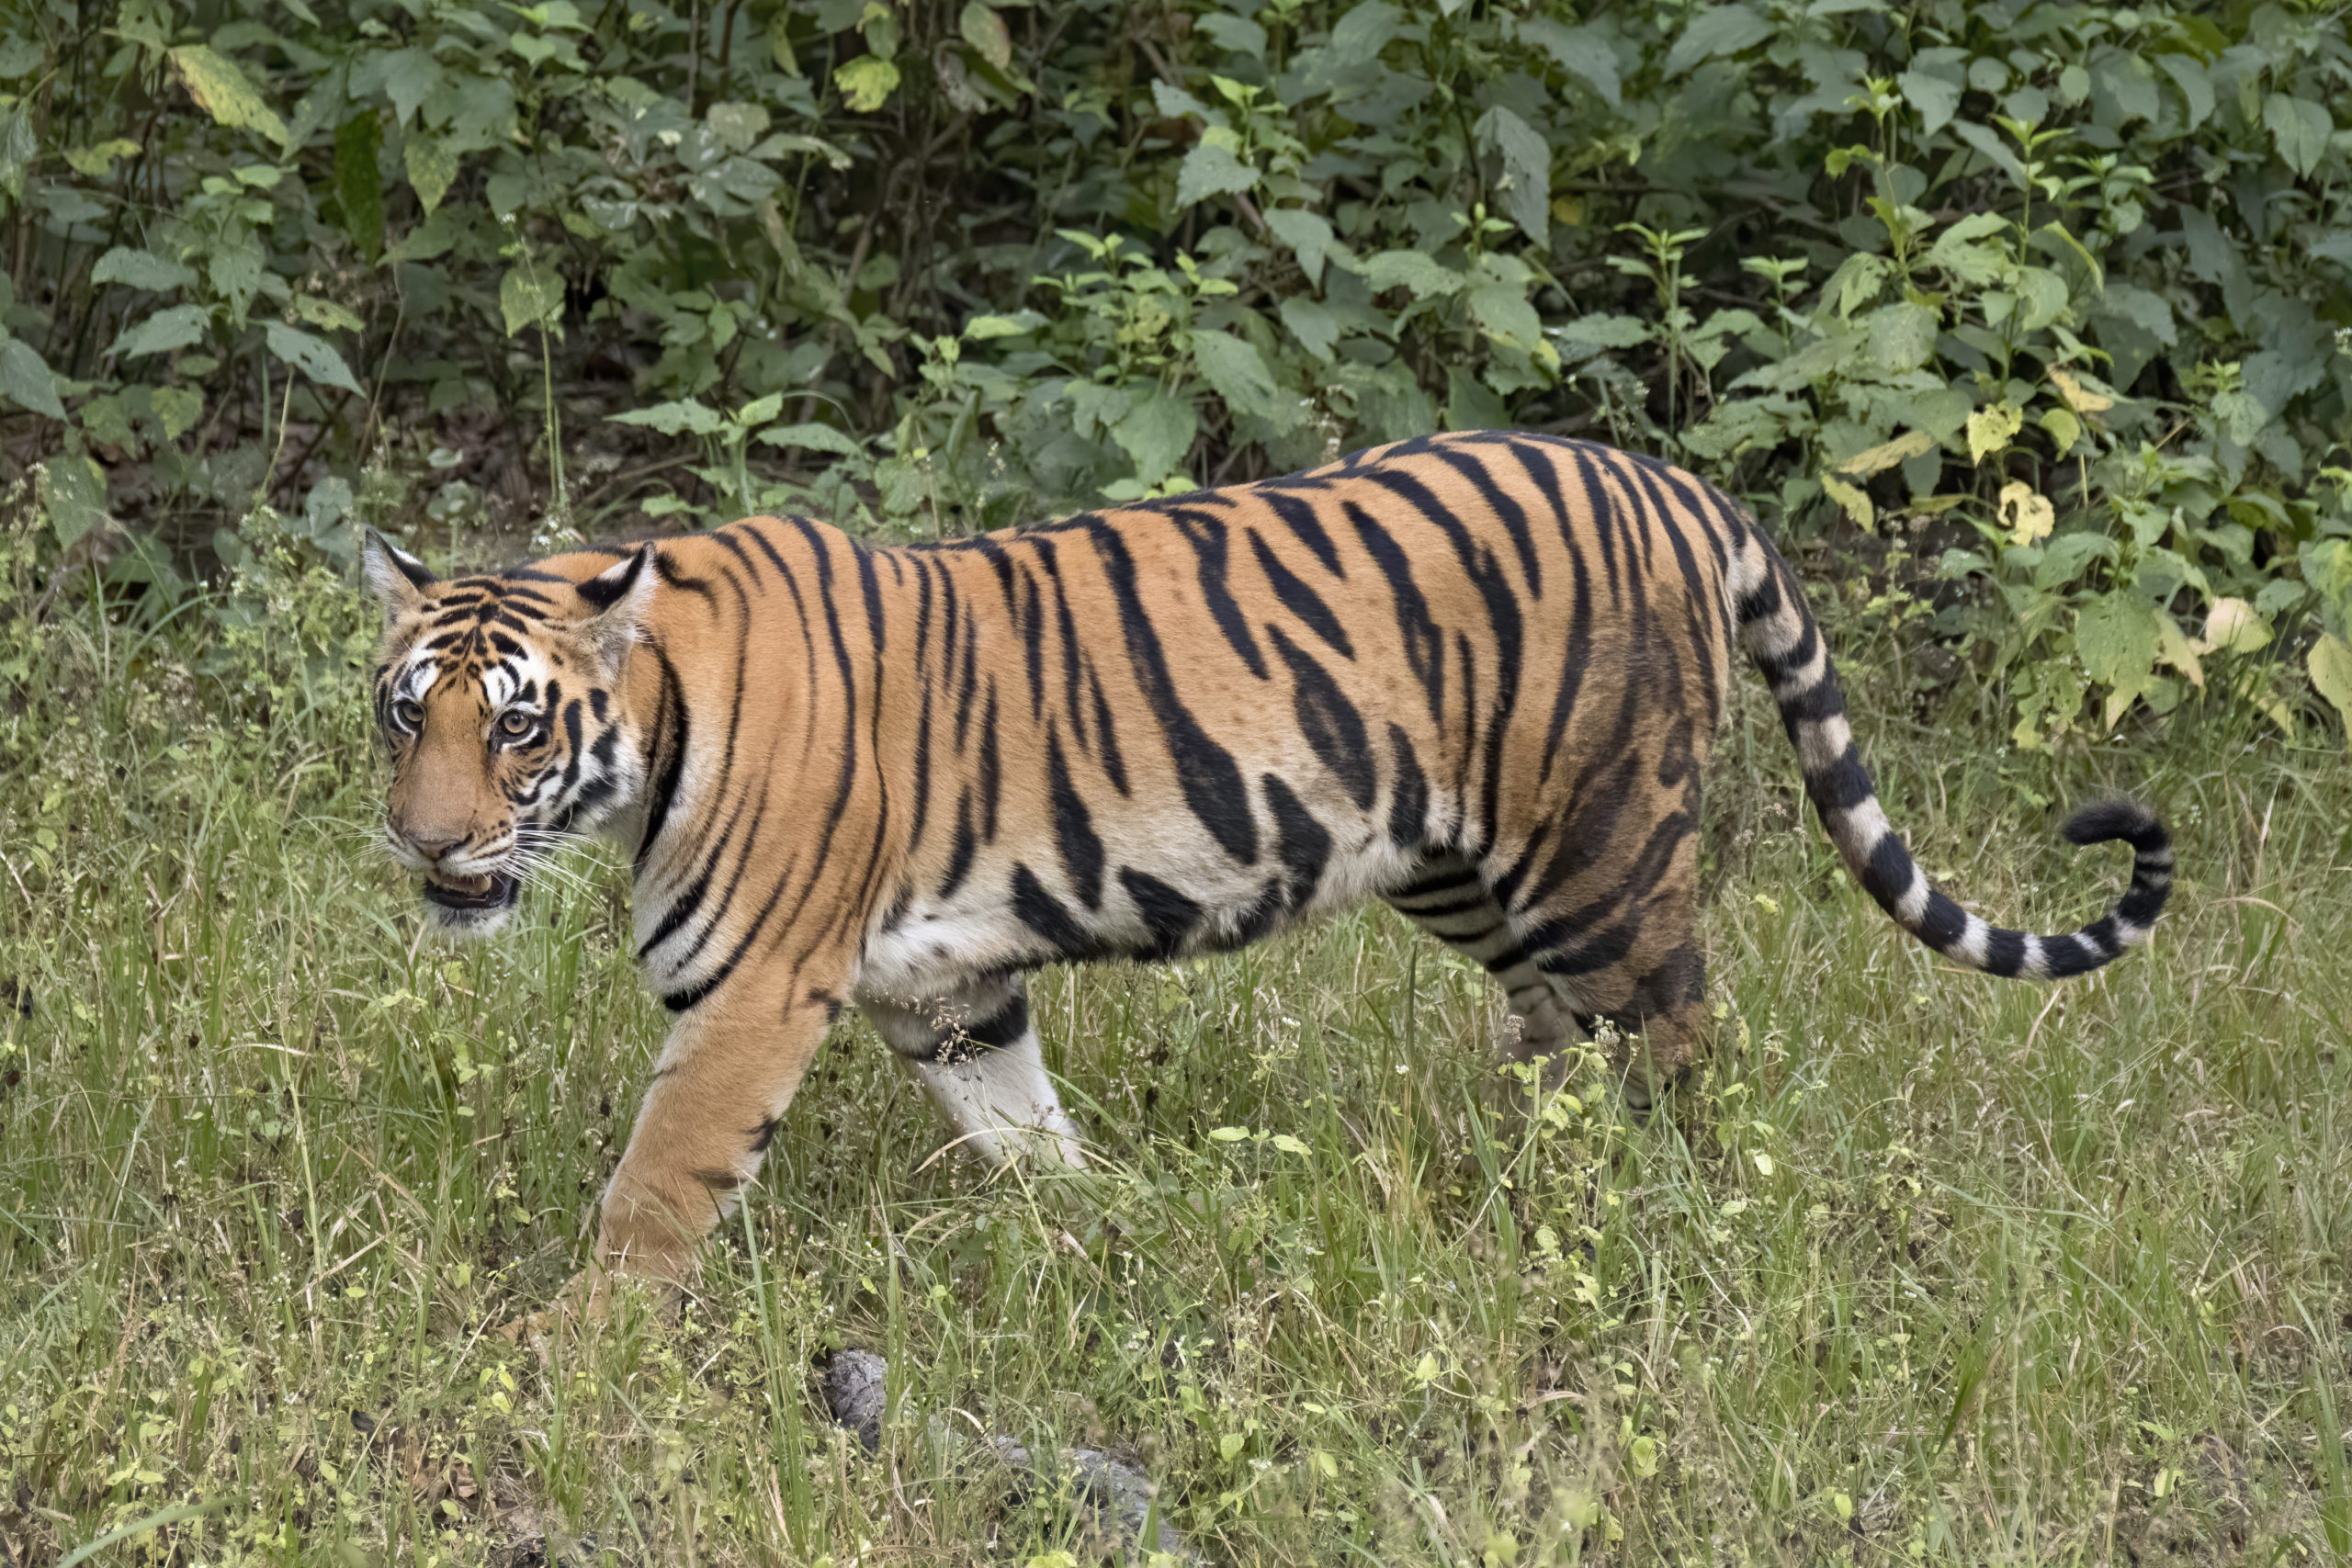 Tiger kills man in Bardiya